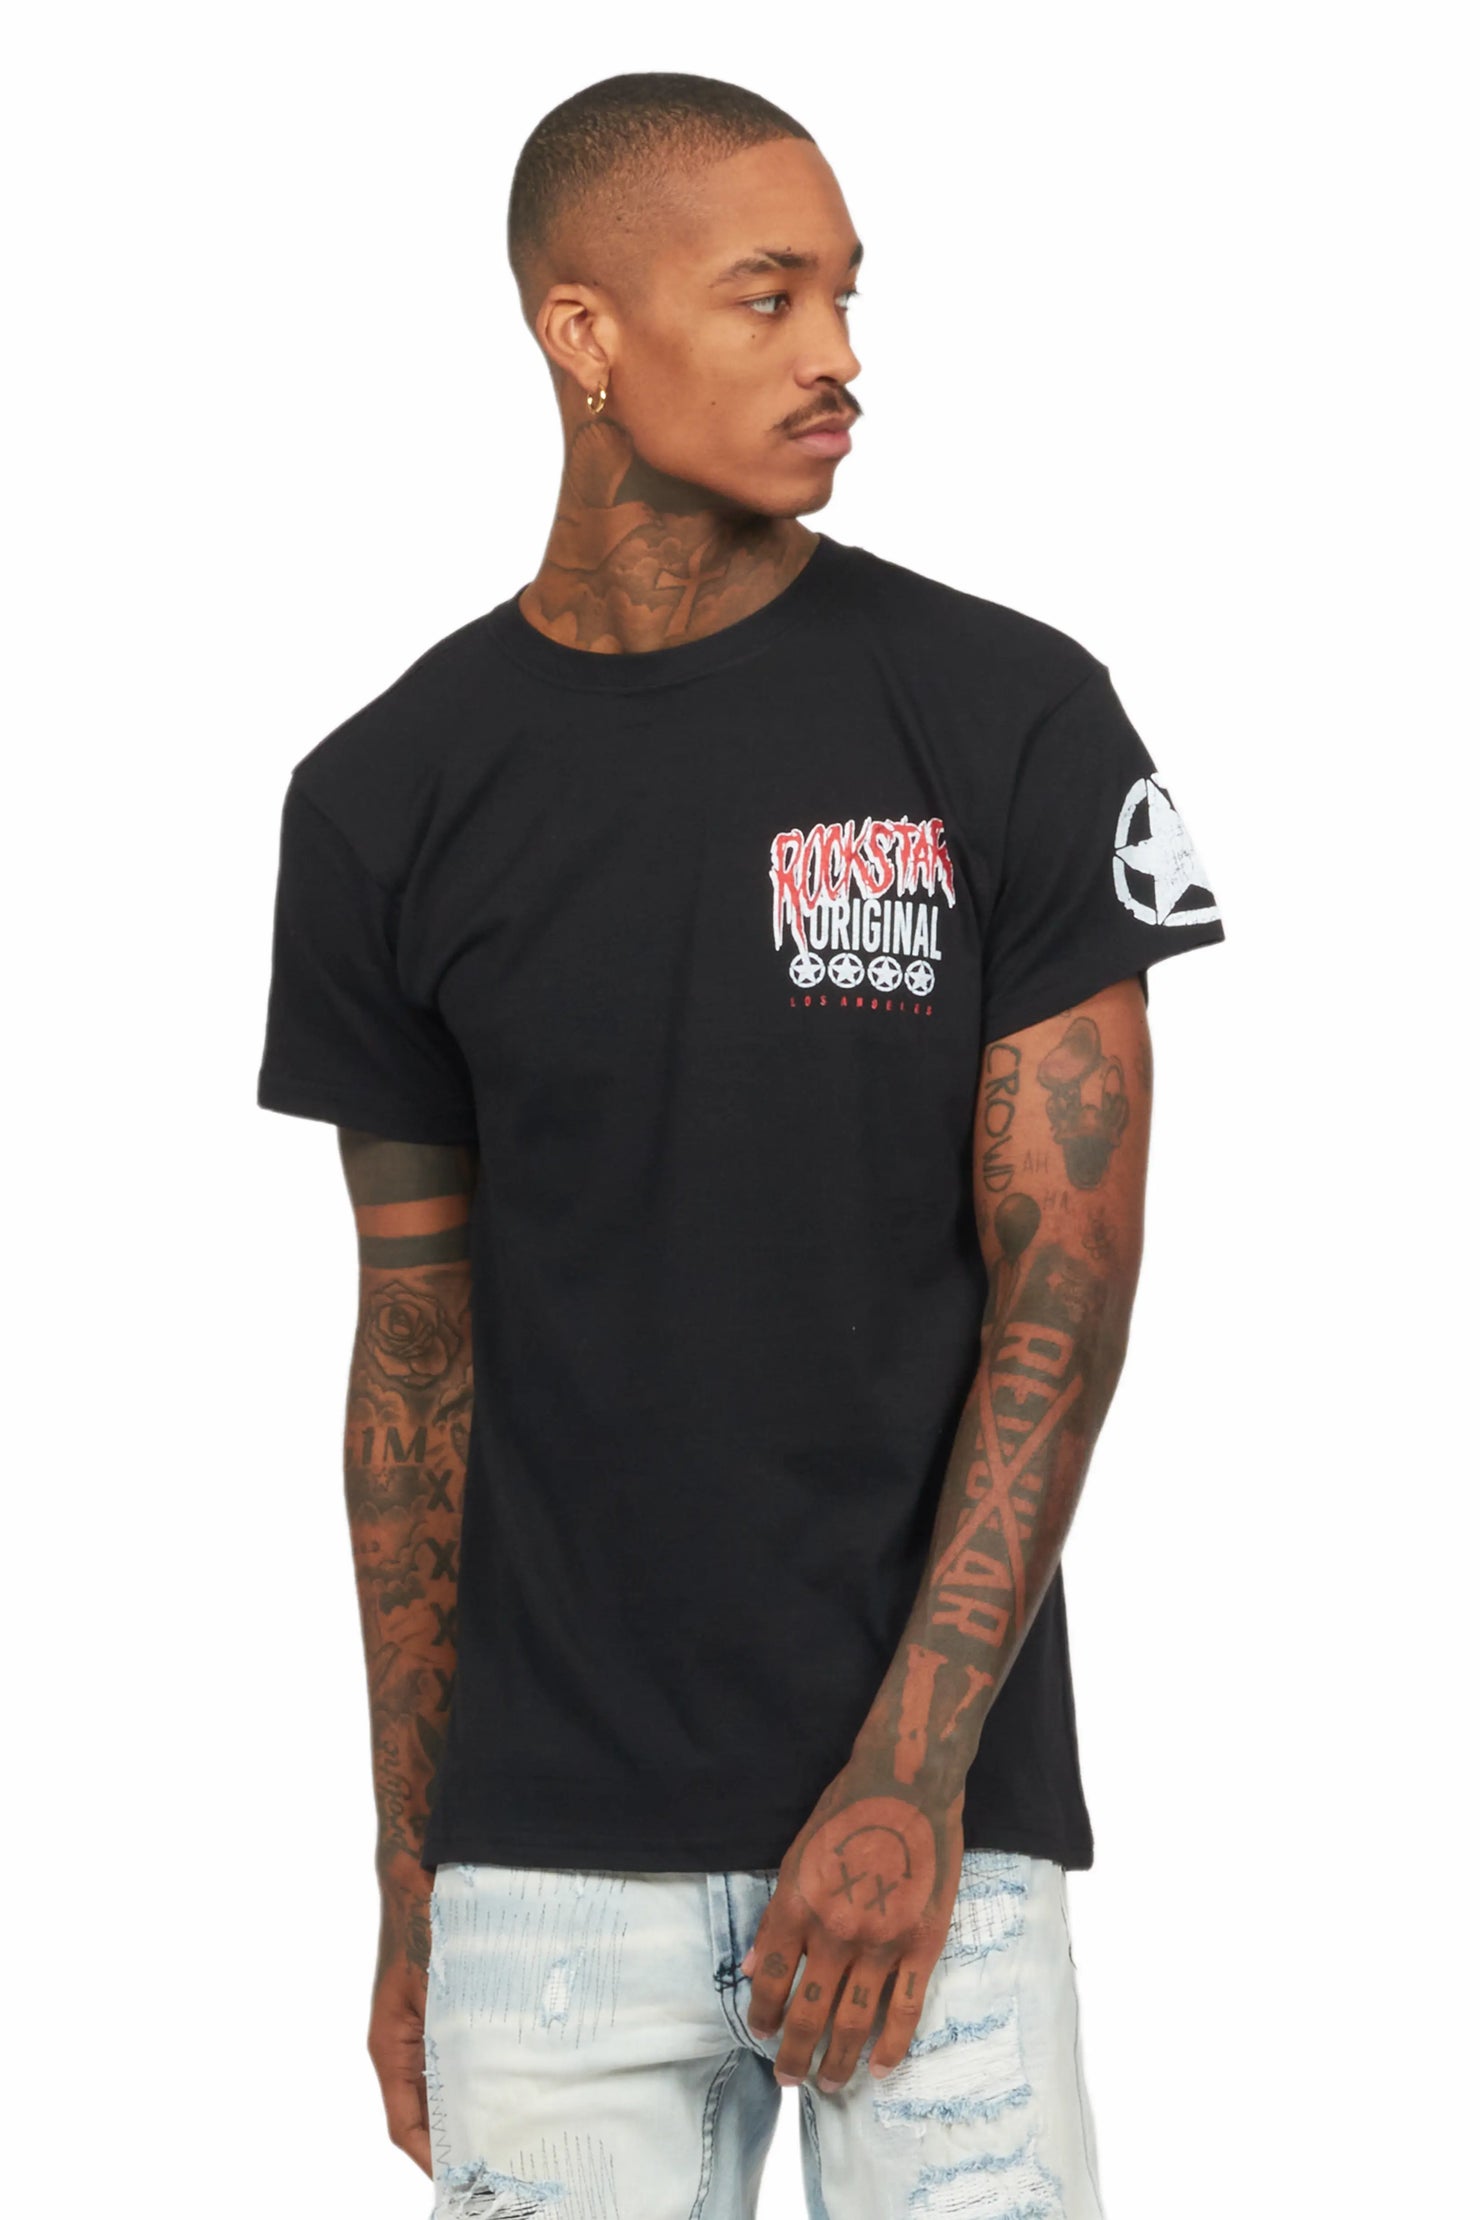 Wizzurd Black Graphic T-Shirt